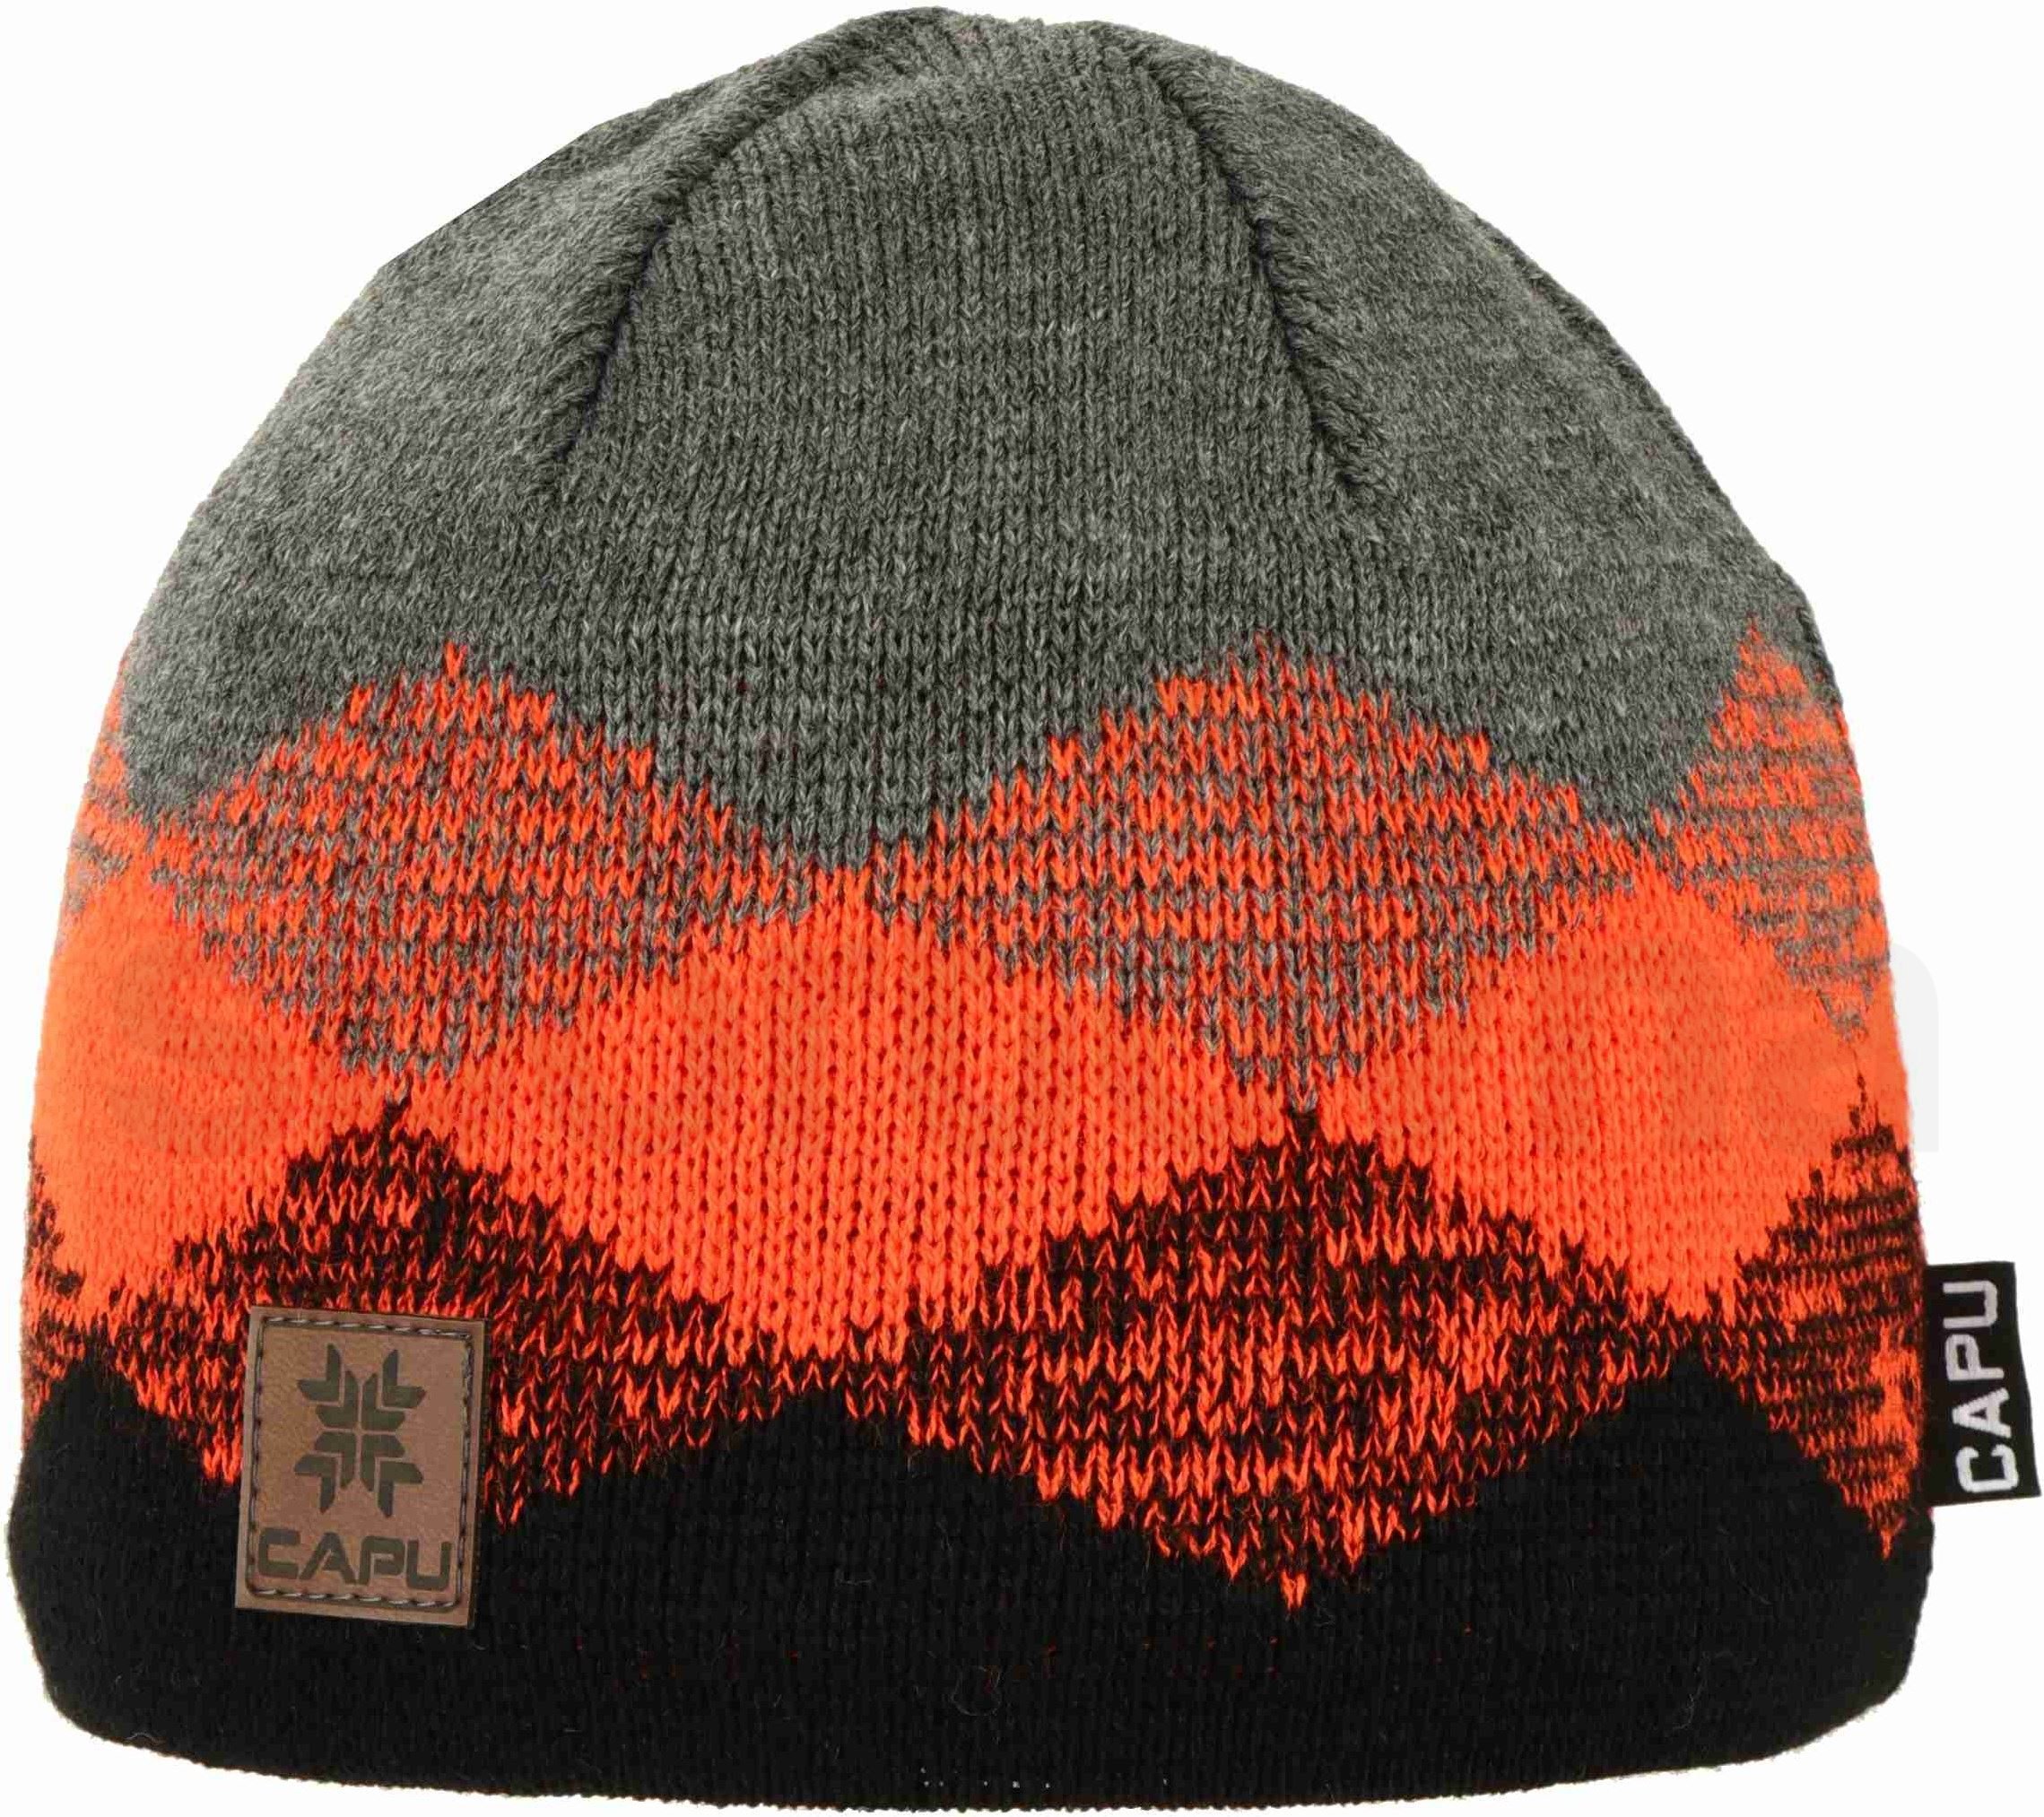 Čepice Capu 1680C M - černá/oranžová